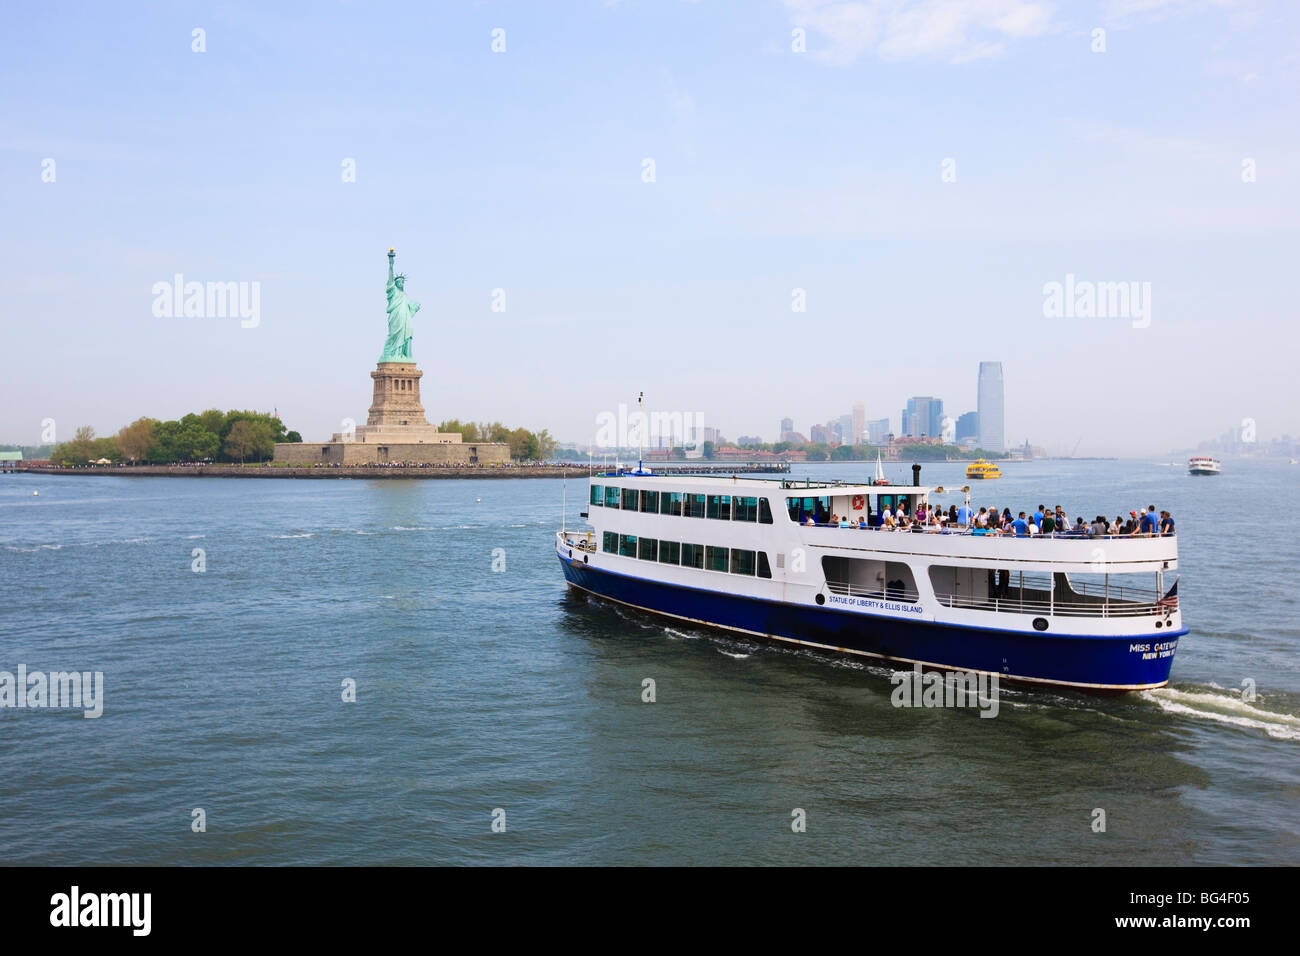 La Statue de la liberté et de ferry, Liberty Island, New York City, New York, États-Unis d'Amérique, Amérique du Nord Banque D'Images